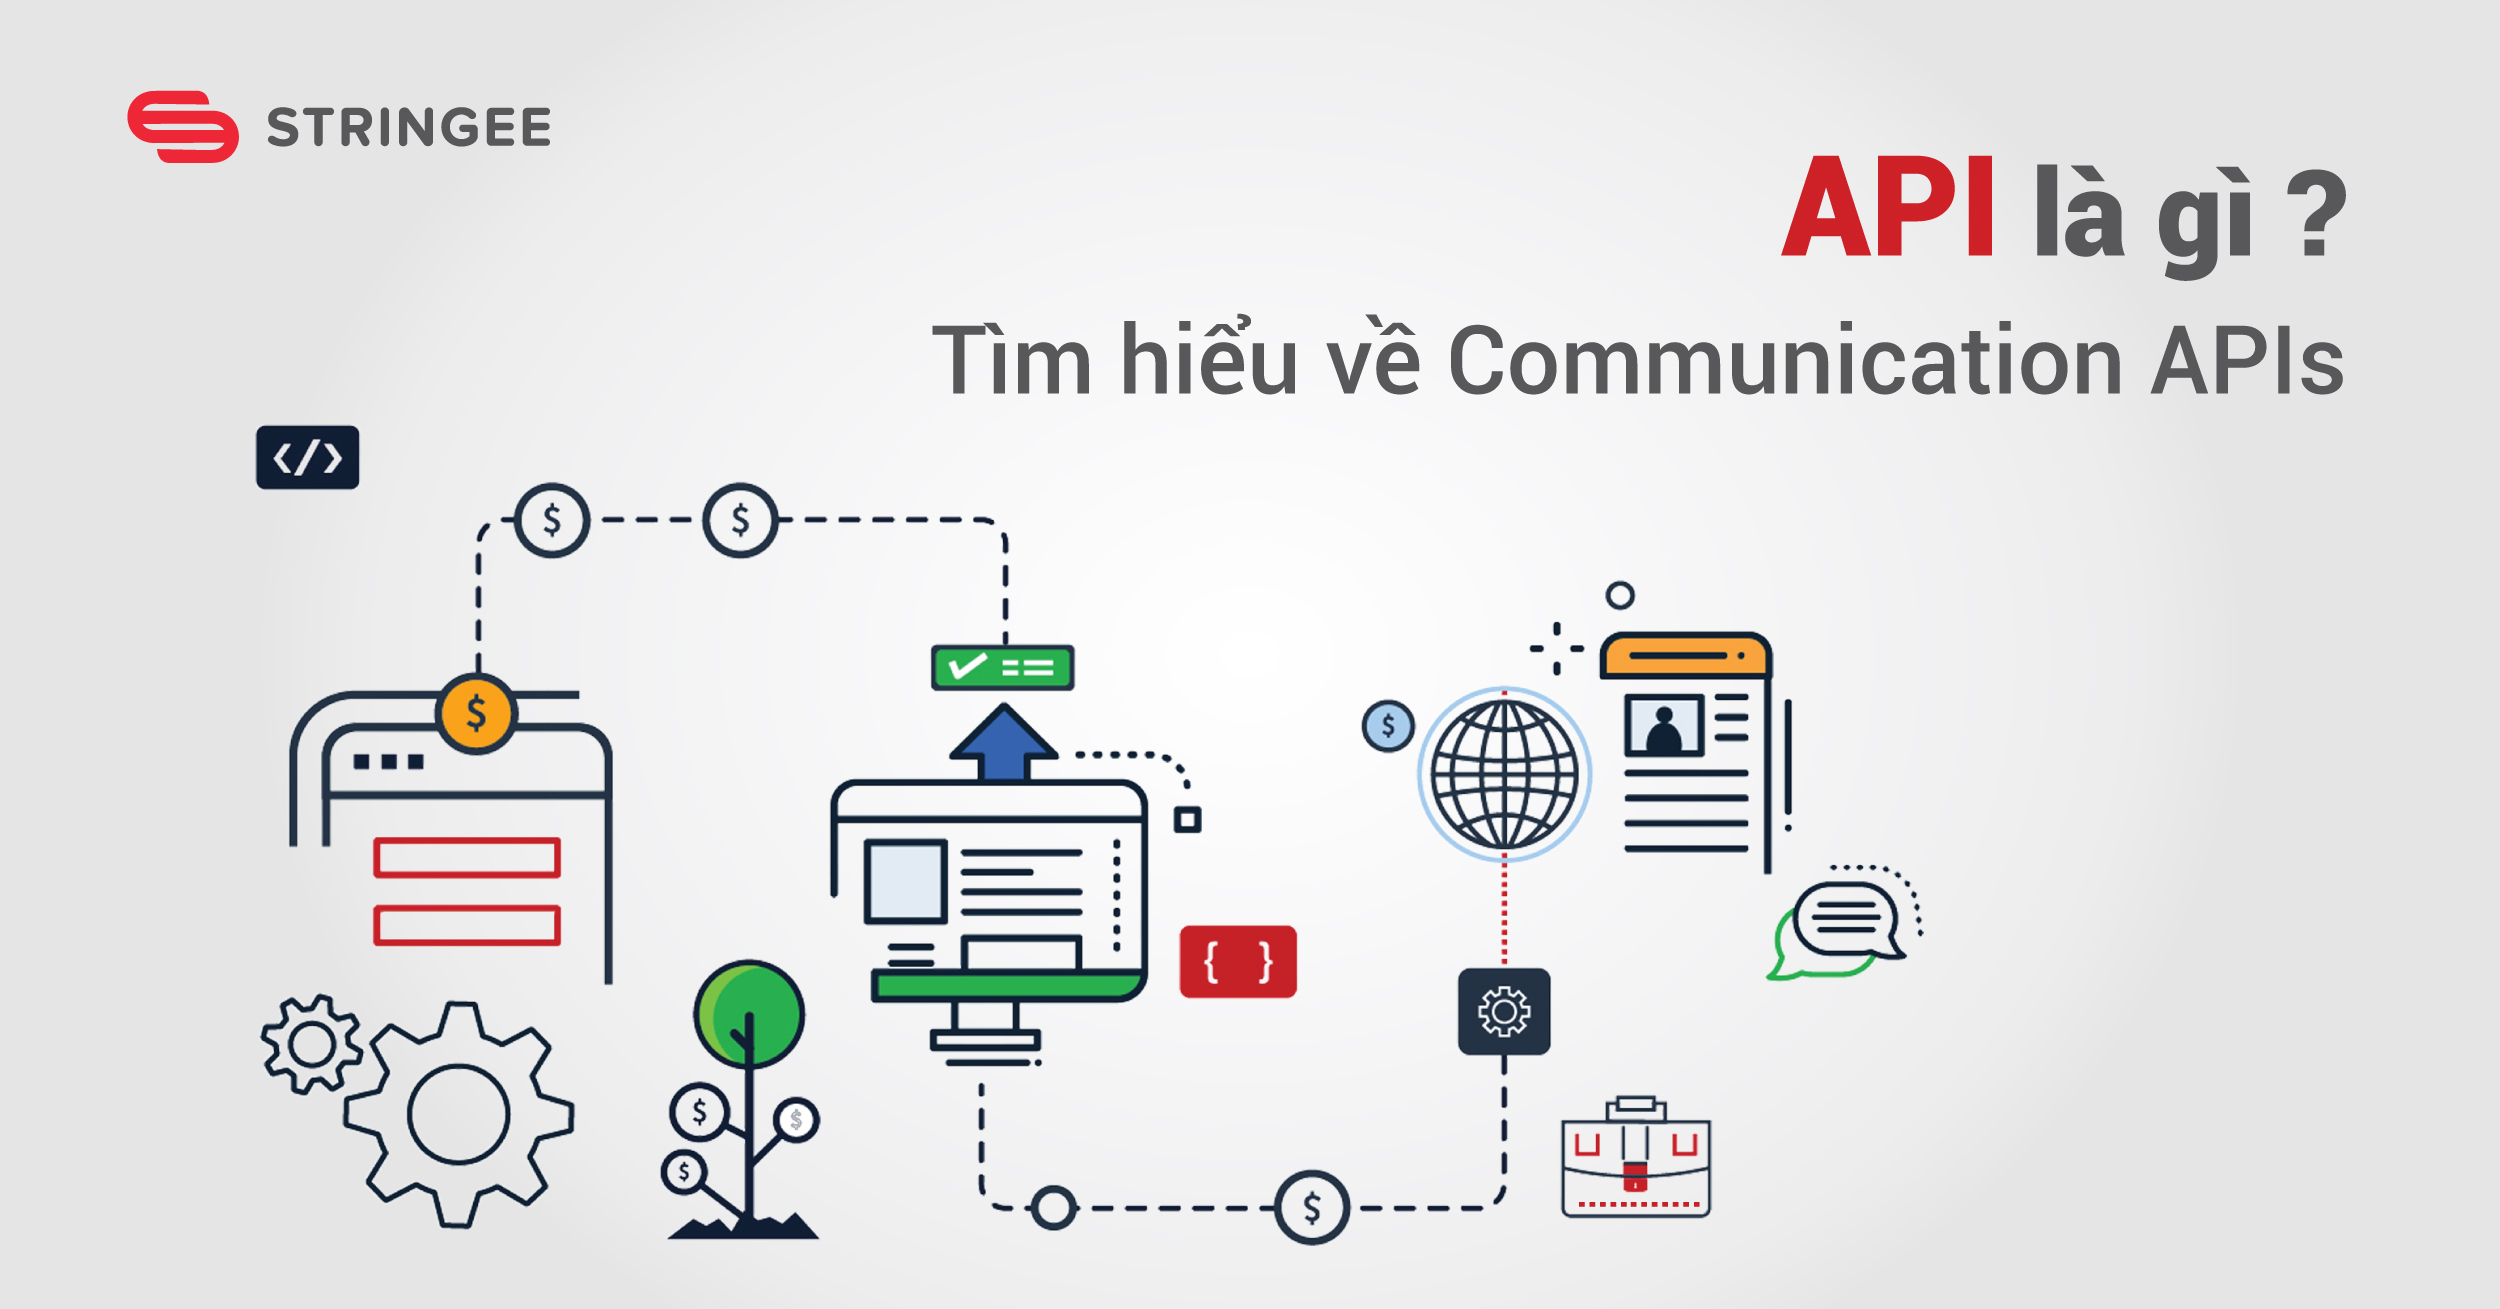 Communication APIs là gì? Tại sao doanh nghiệp cần sử dụng Communication APIs?